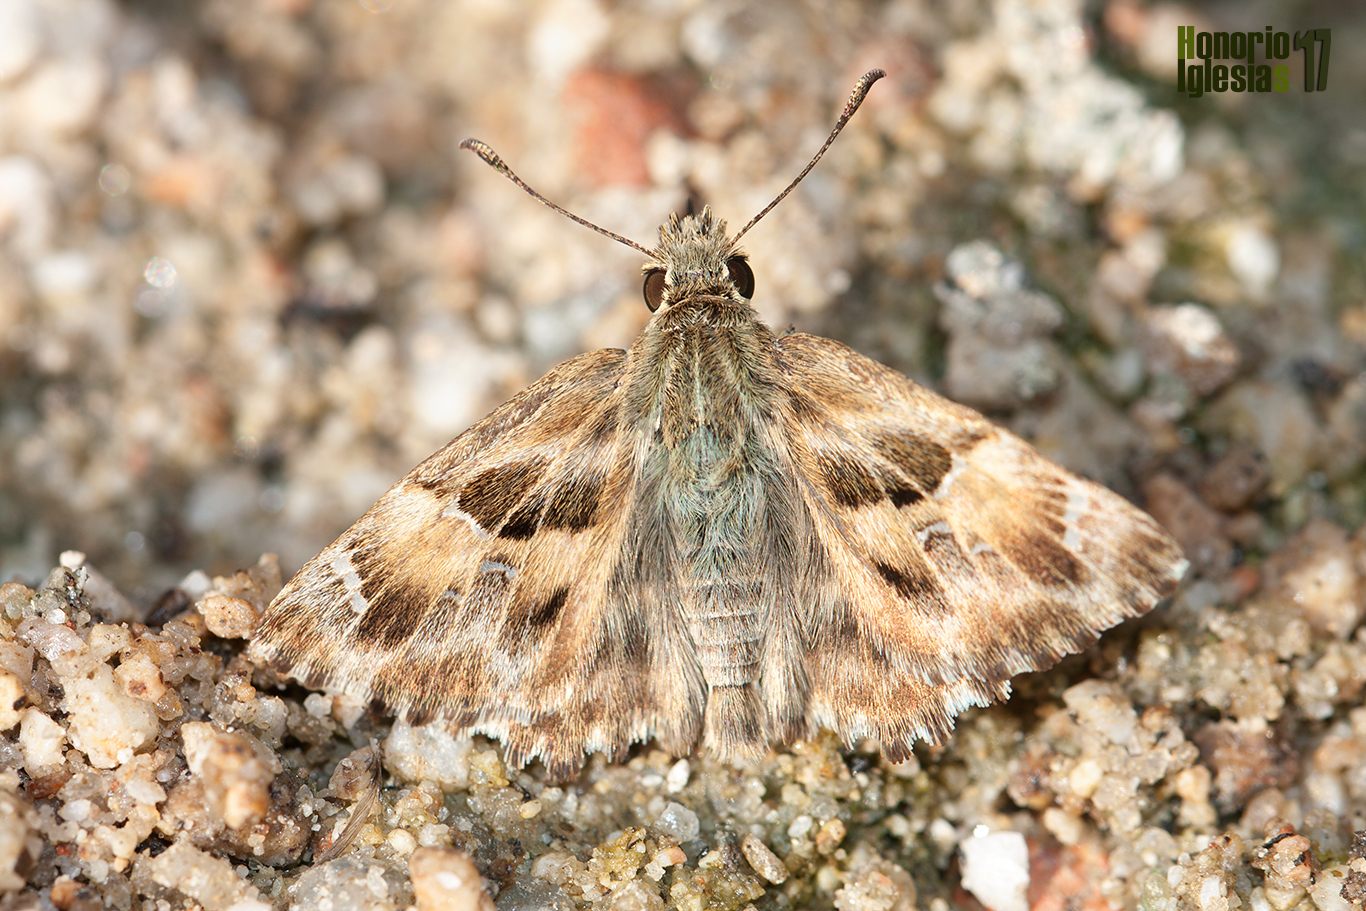 Ejemplar de la mariposa Piquitos de las malvas o Piquitos castaña (Carcharodus alceae) libando al borde de un arroyo serrano.